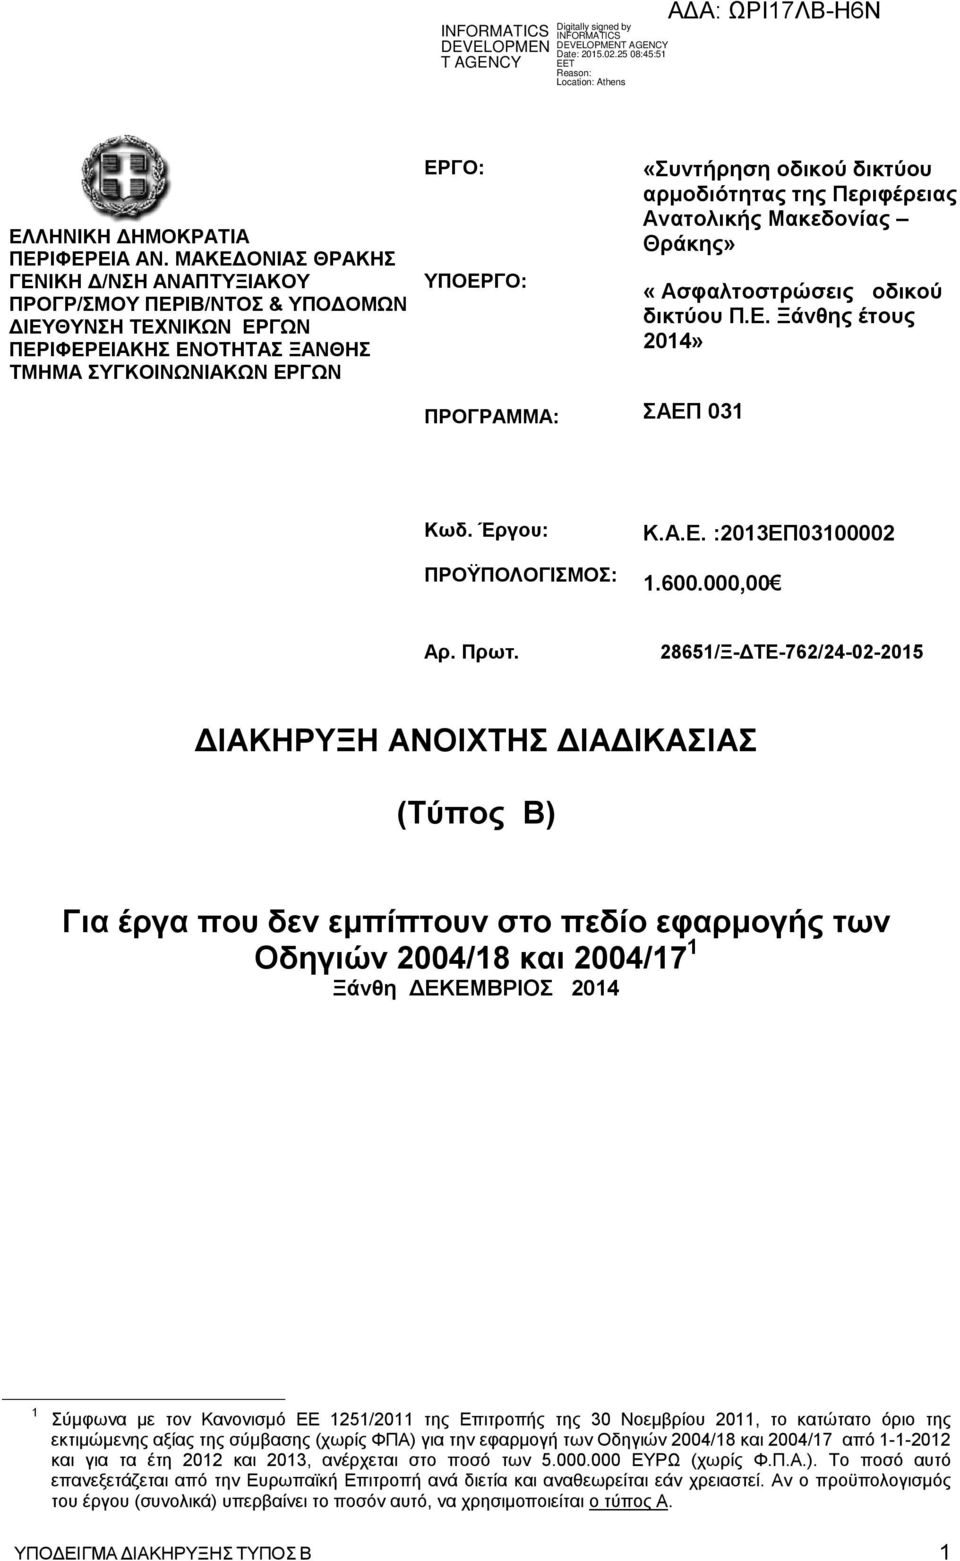 οδικού δικτύου αρμοδιότητας της Περιφέρειας Ανατολικής Μακεδονίας Θράκης» «Aσφαλτοστρώσεις οδικού δικτύου Π.Ε. Ξάνθης έτους 2014» ΣΑΕΠ 031 Κωδ. Έργου: ΠΡΟΫΠΟΛΟΓΙΣΜΟΣ: Κ.Α.Ε. :2013ΕΠ03100002 1.600.